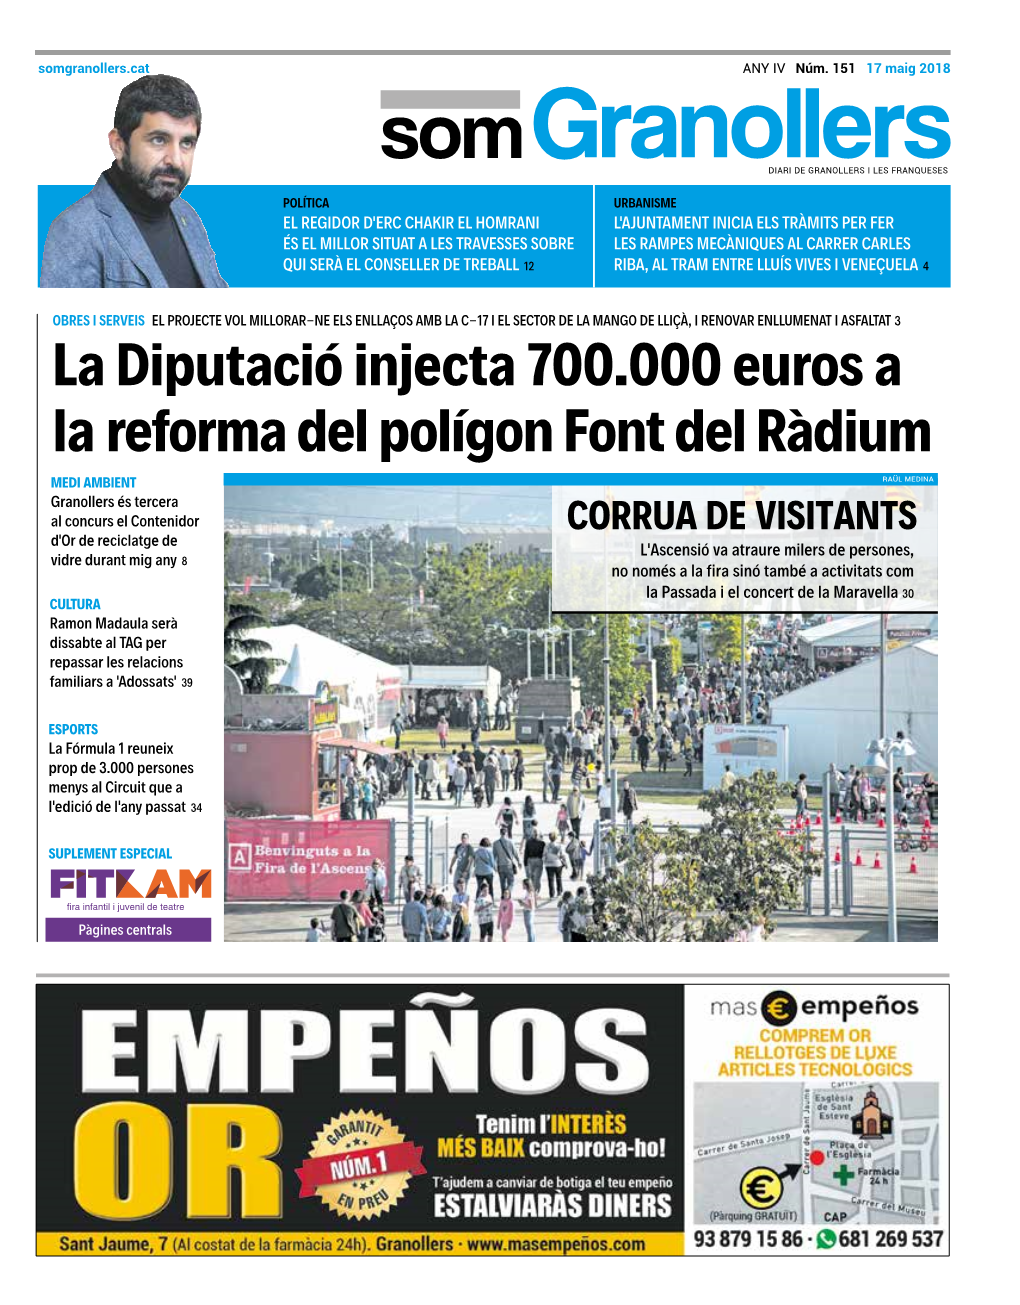 La Diputació Injecta 700.000 Euros a La Reforma Del Polígon Font Del